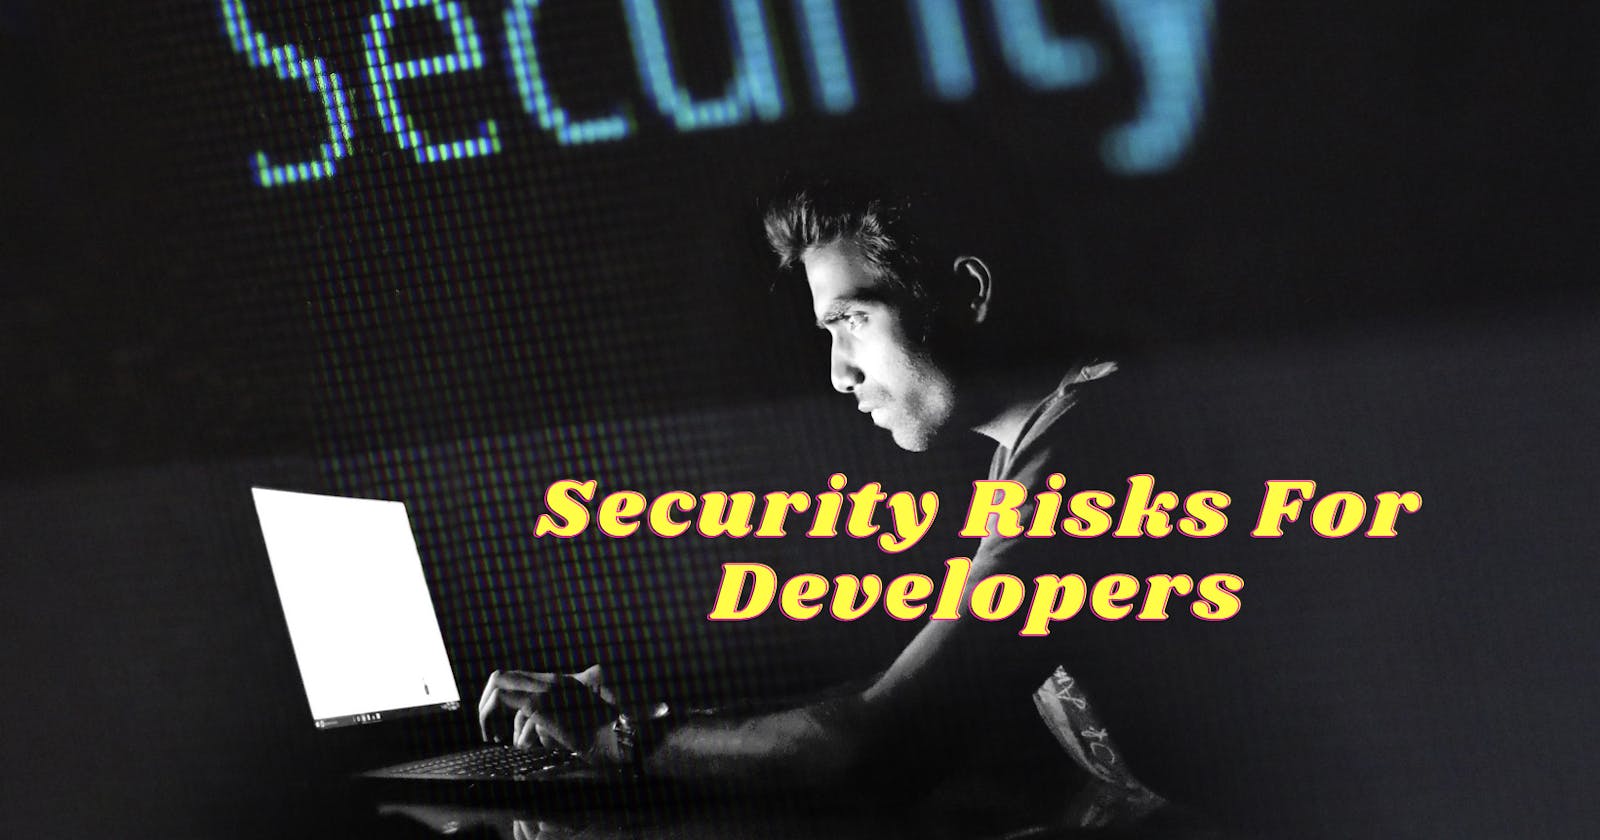 Avoiding Security Risks for Developers